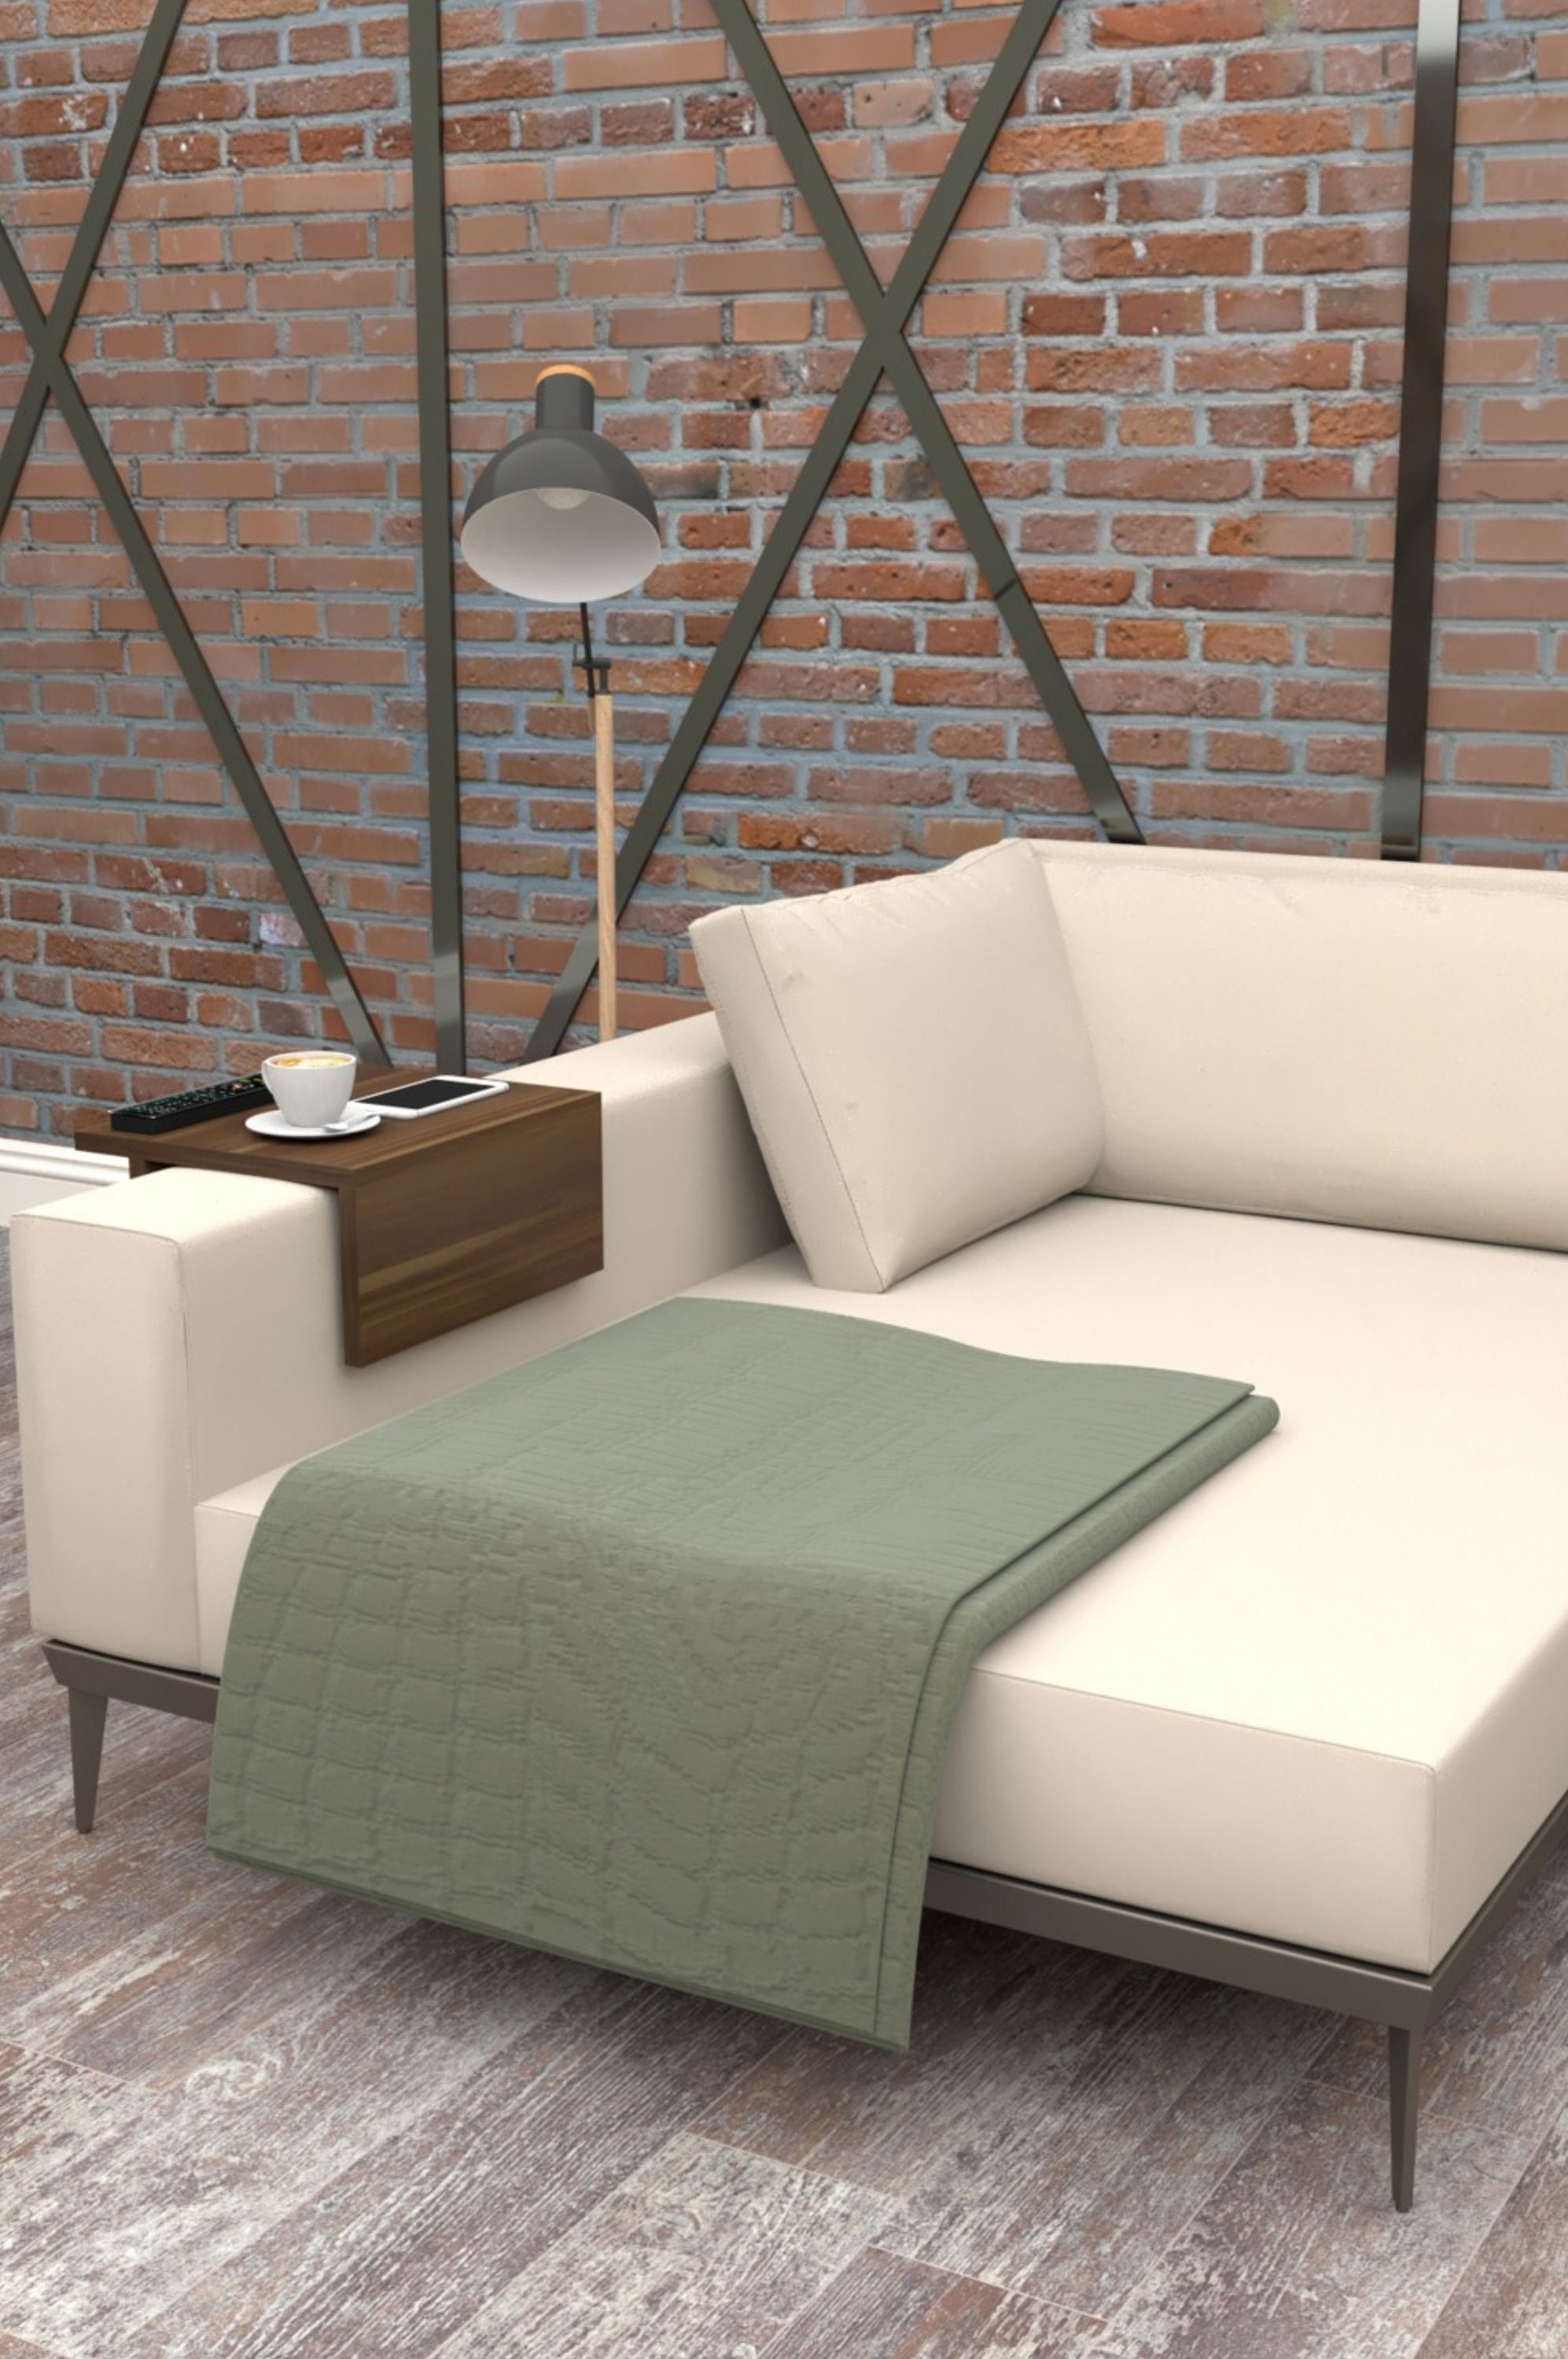 Sofa Armlehnentisch Couchtisch Couch Arm Tassenhalter